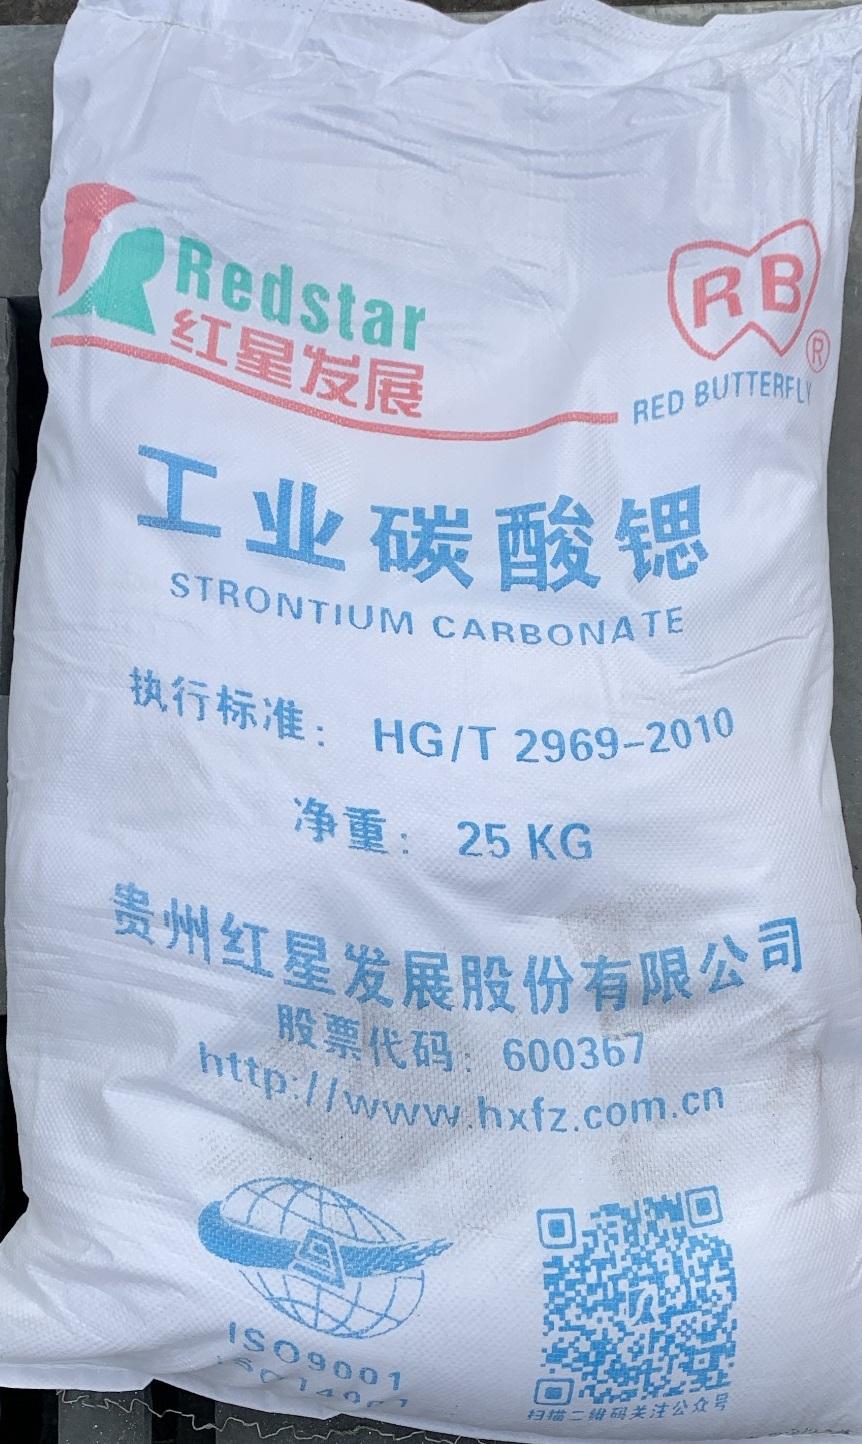 Strontium carbonate - SrCO3